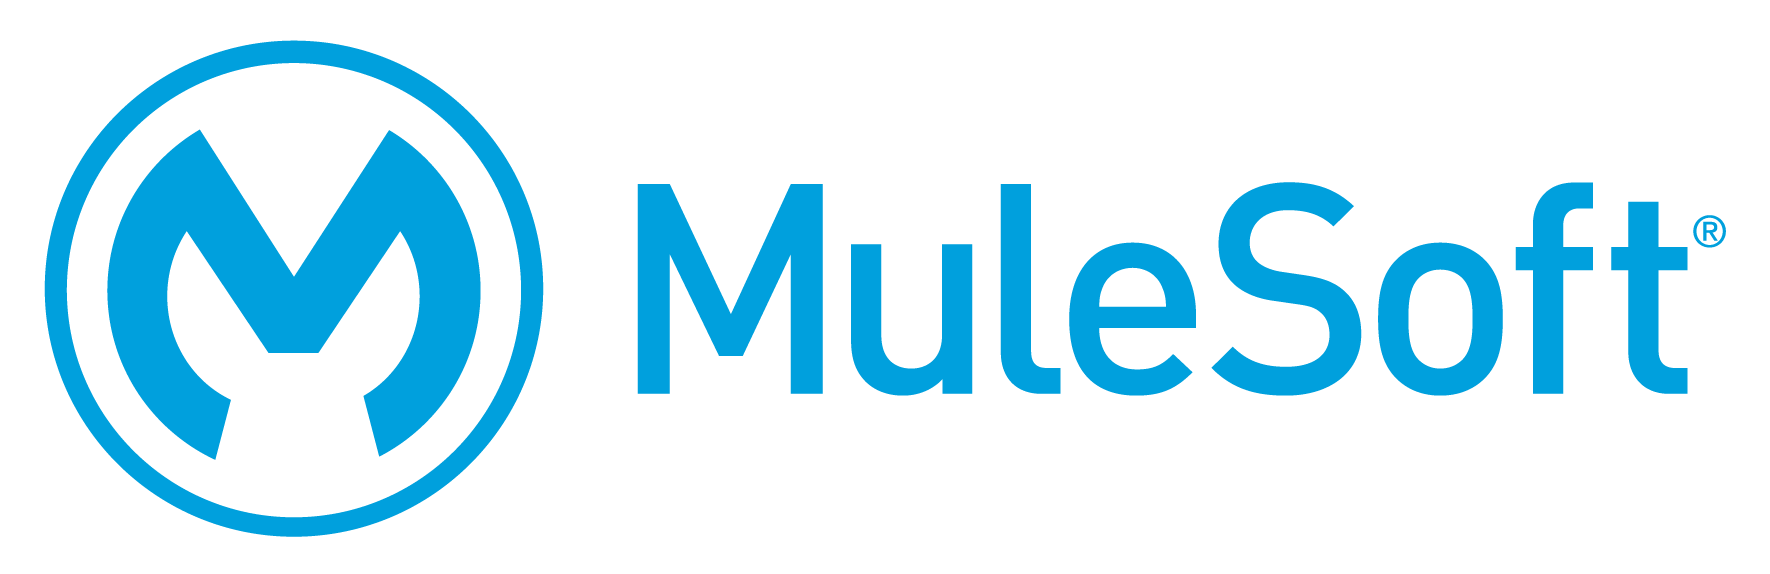 Mule Soft